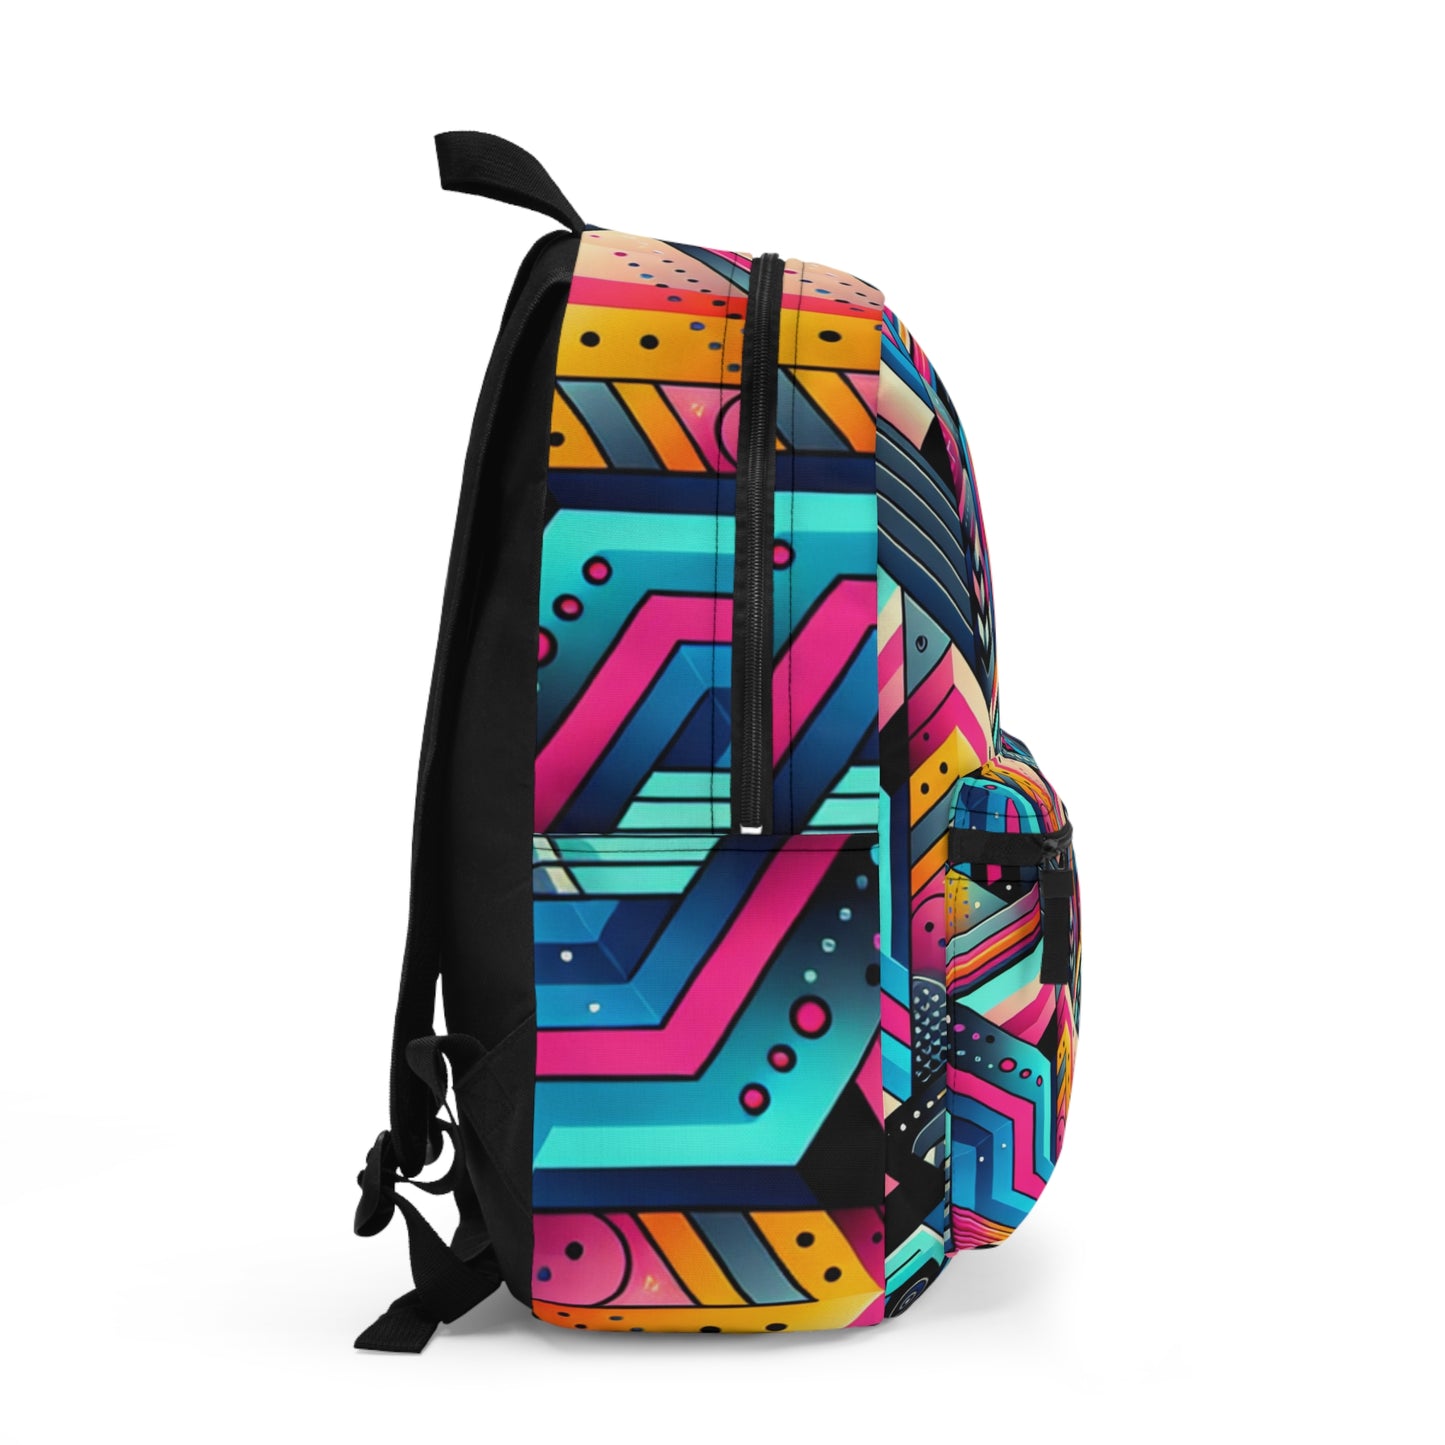 Neon Geometry - The Alien Backpack Digital Art Style